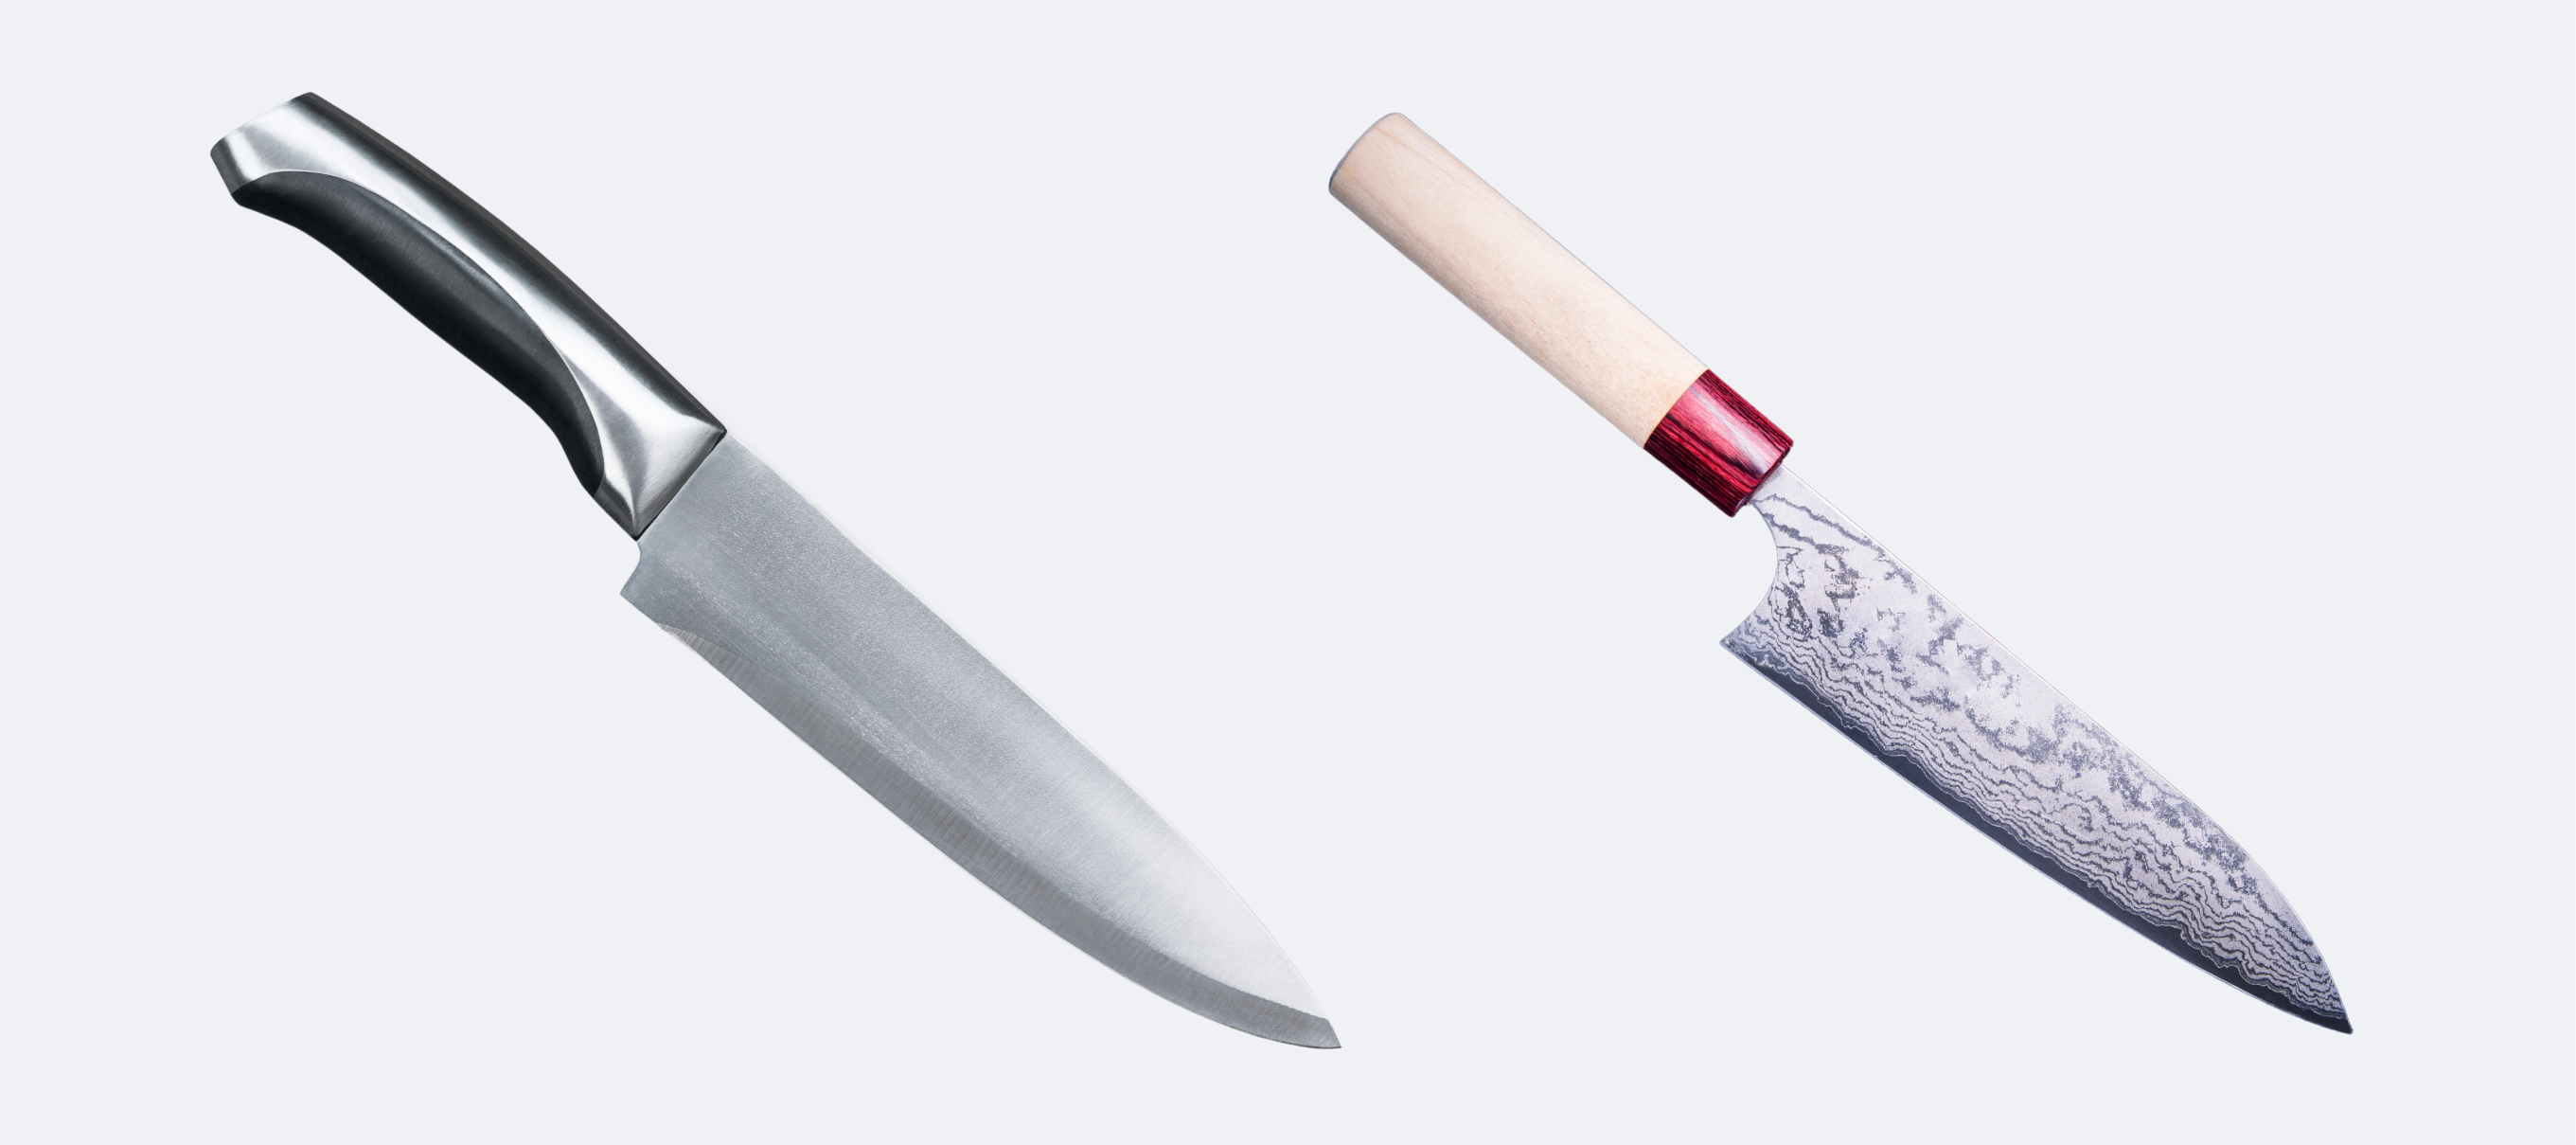 afkom Uenighed omfatte Hvad er forskellen mellem en japansk og en tysk knivsæt? – santokuknives